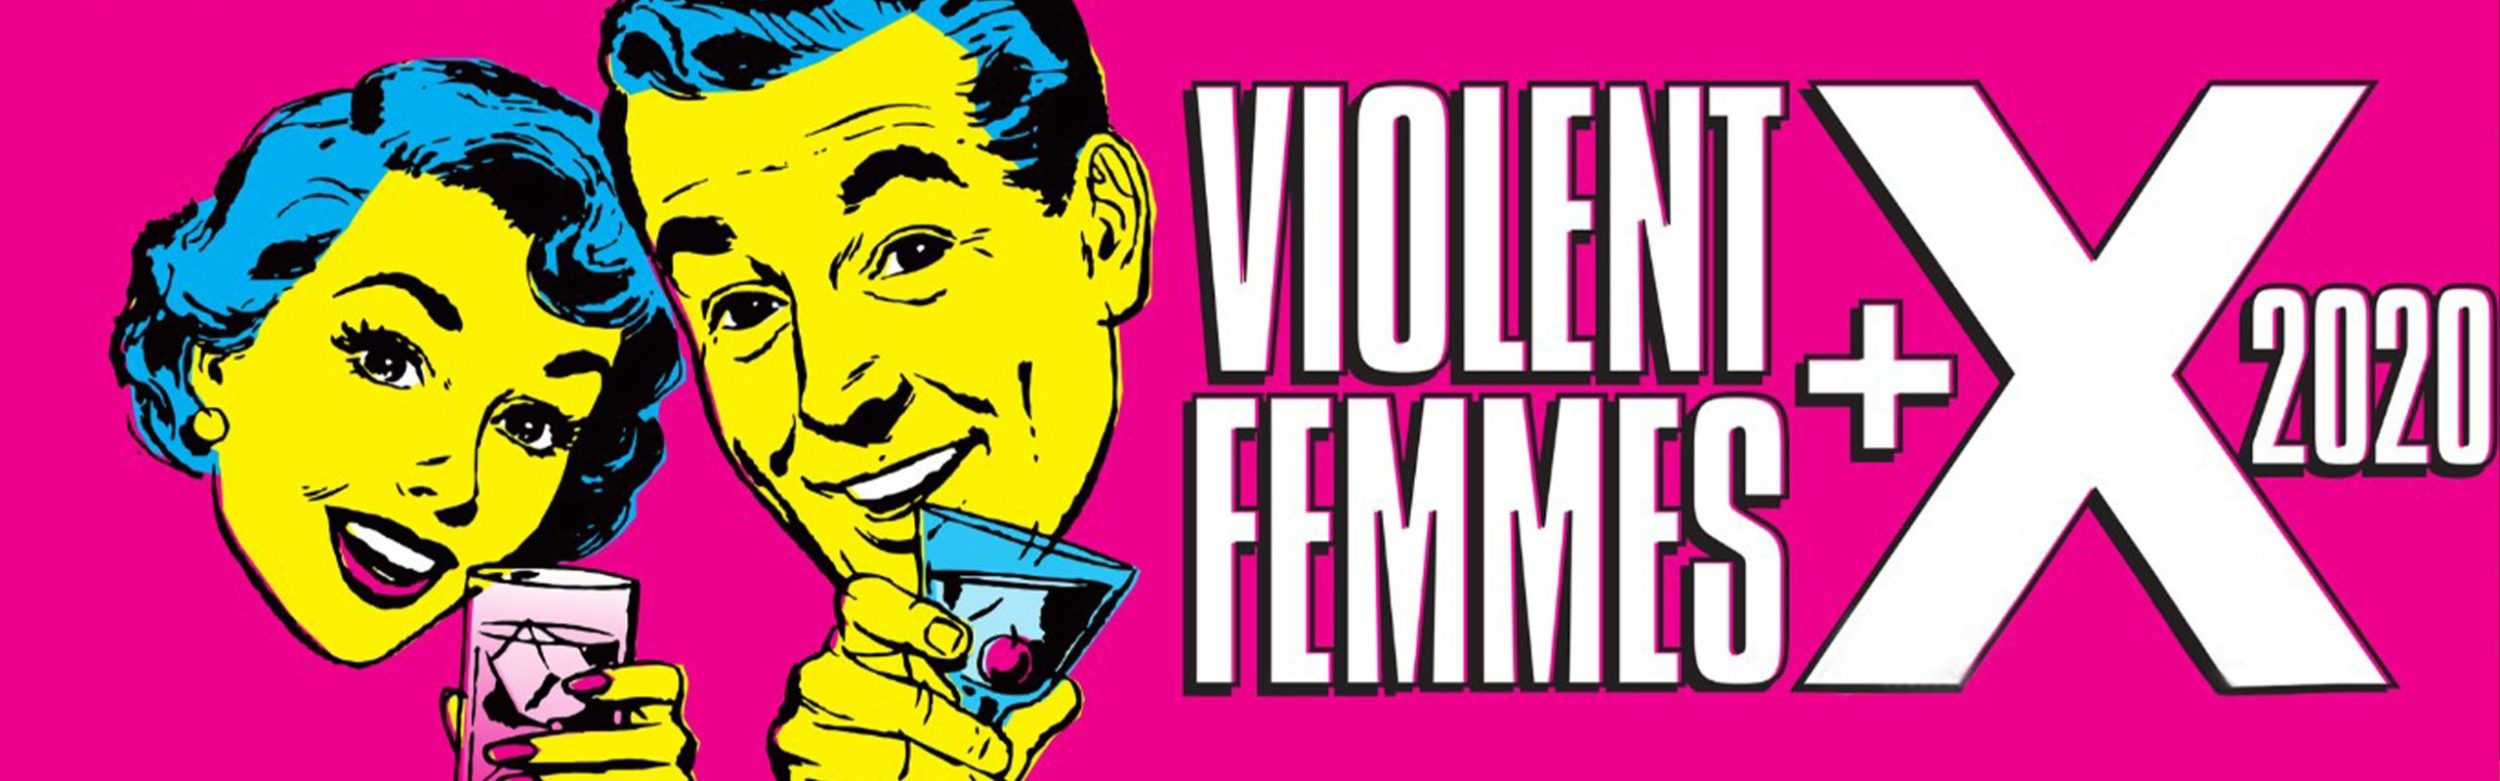 Violent Femmes + X 2020